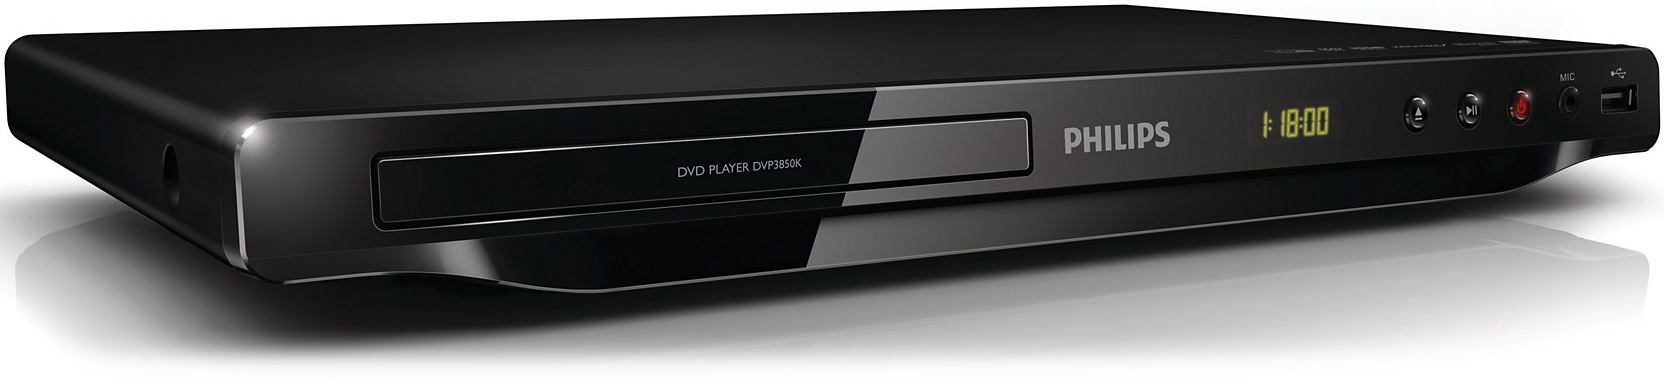 เครื่องเล่น dvd philips มีคาราโอเกะ ดูหนังฟังเพลงจากUSBใหม่ 100% แท้ ดี มีรับประกัน รูปที่ 1